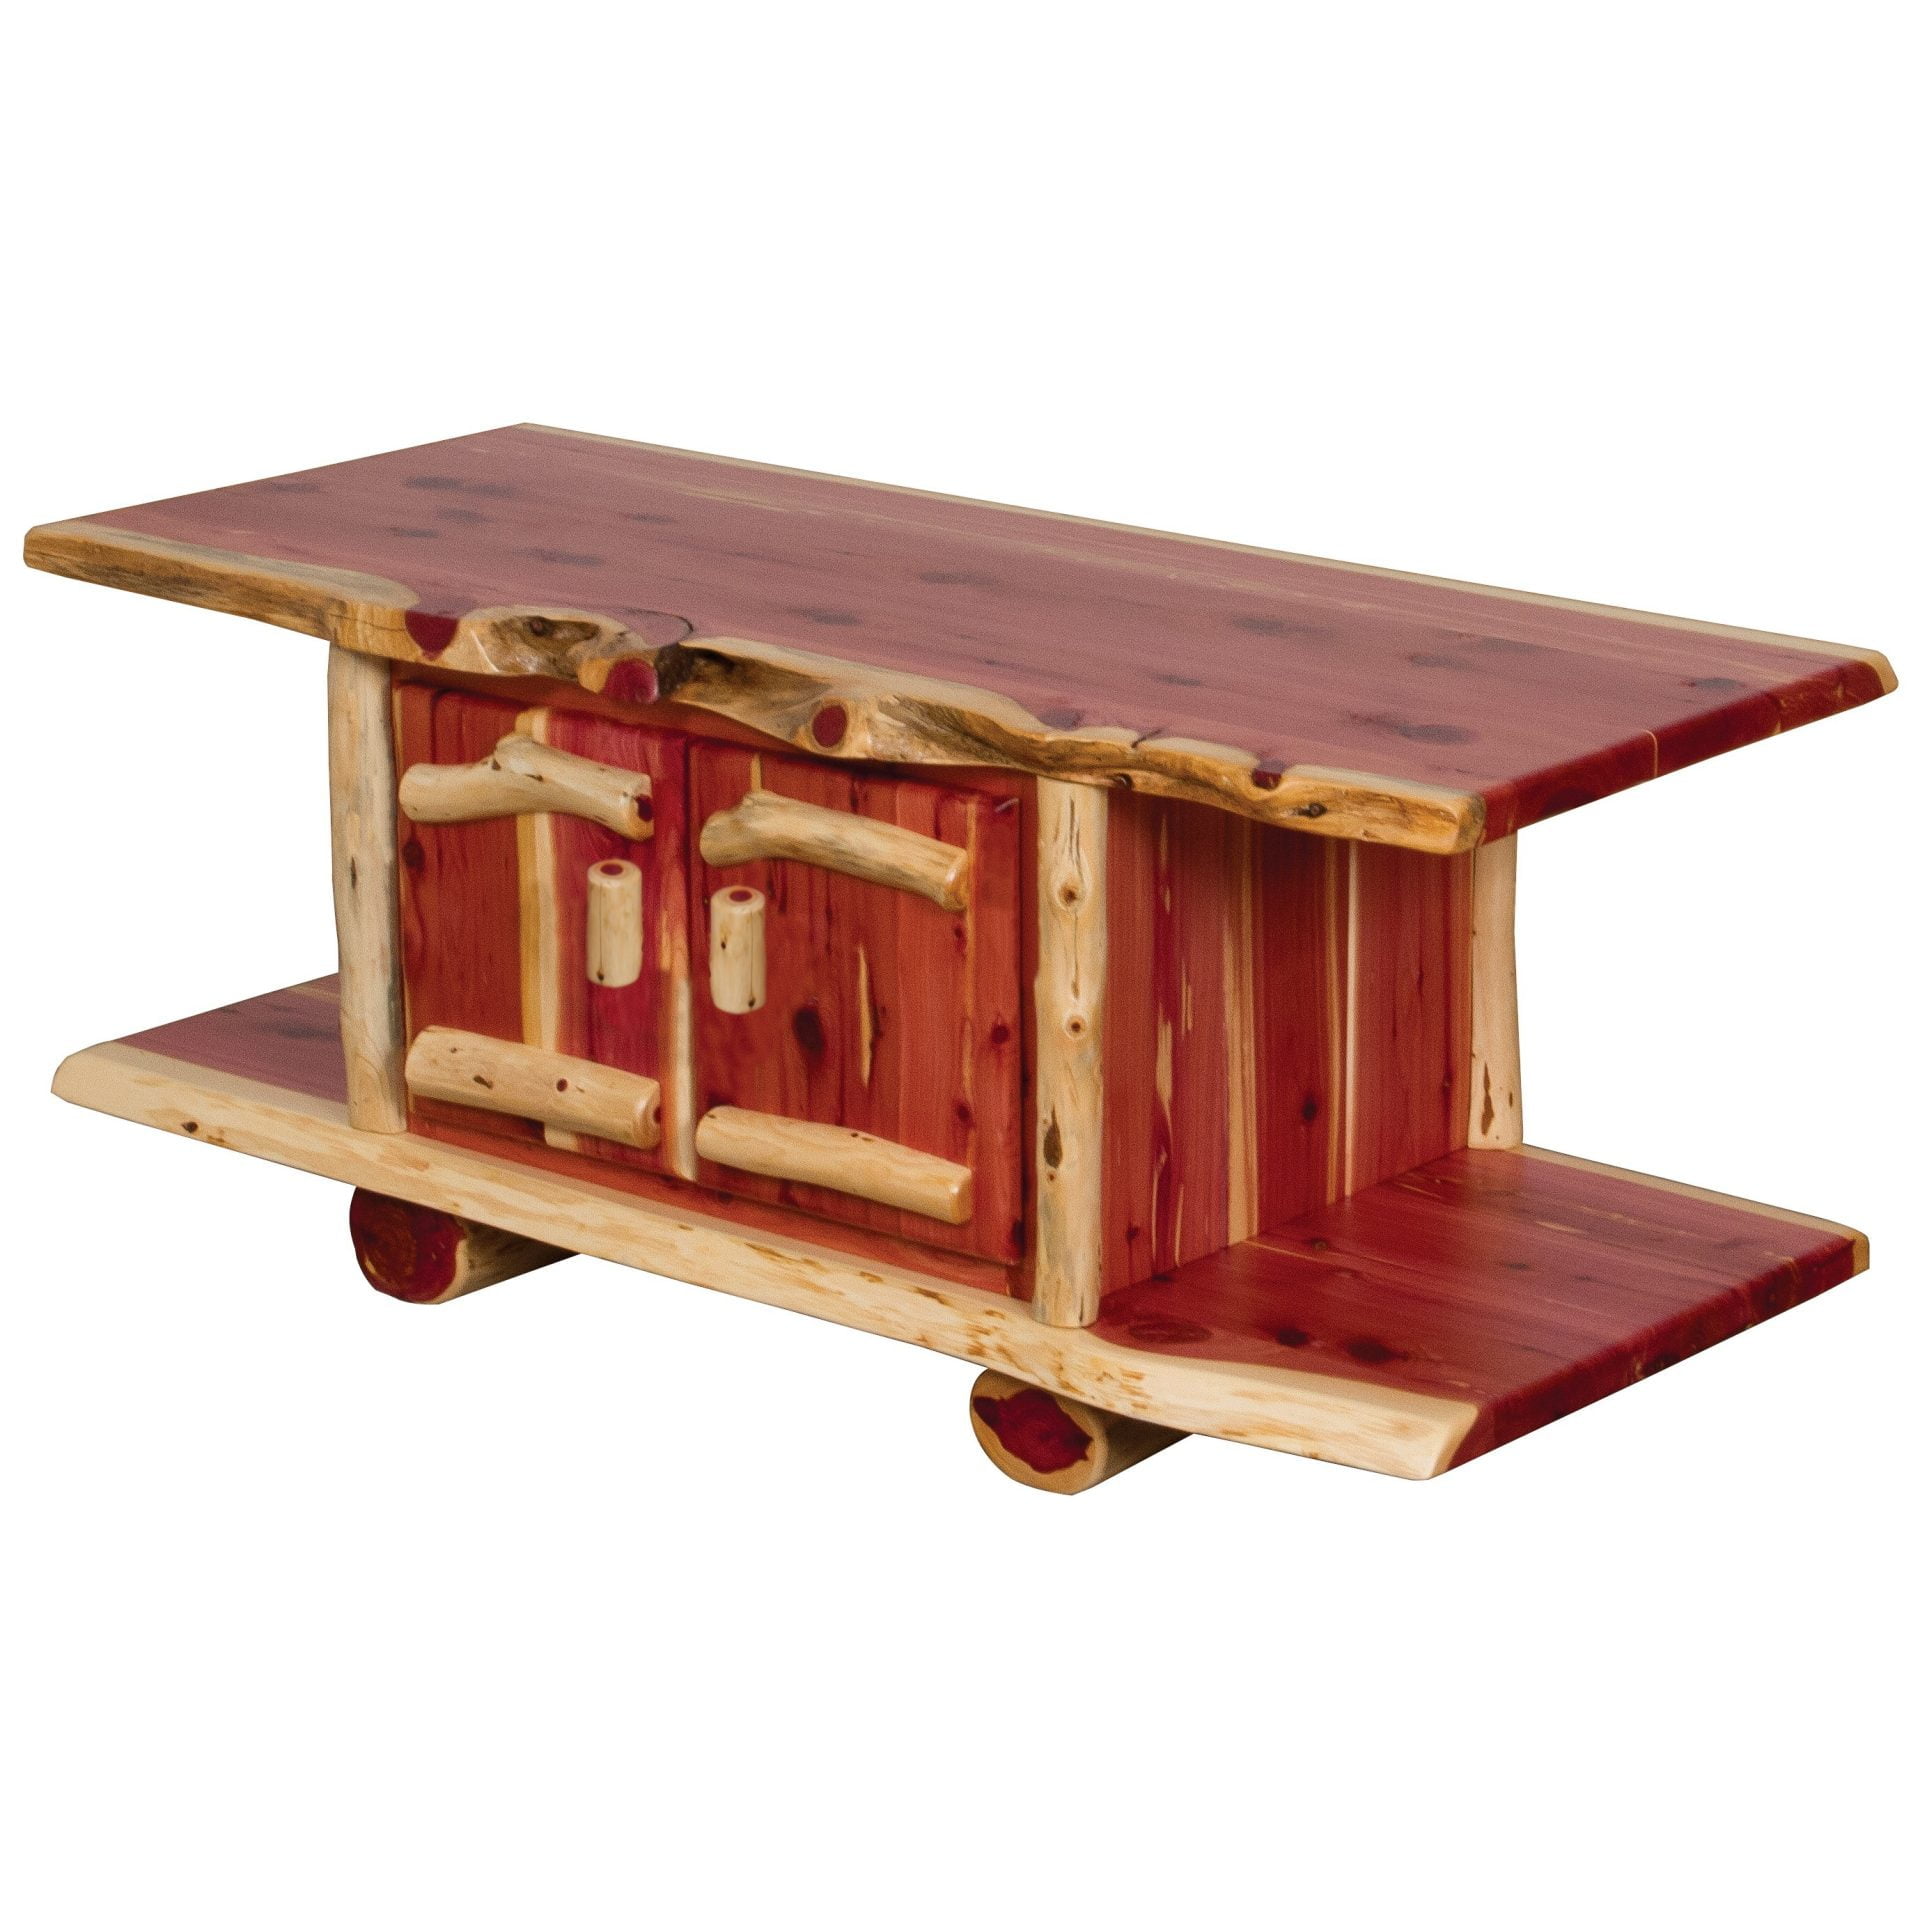 Rustic Red Cedar Log Coffee Table with 2 Doors